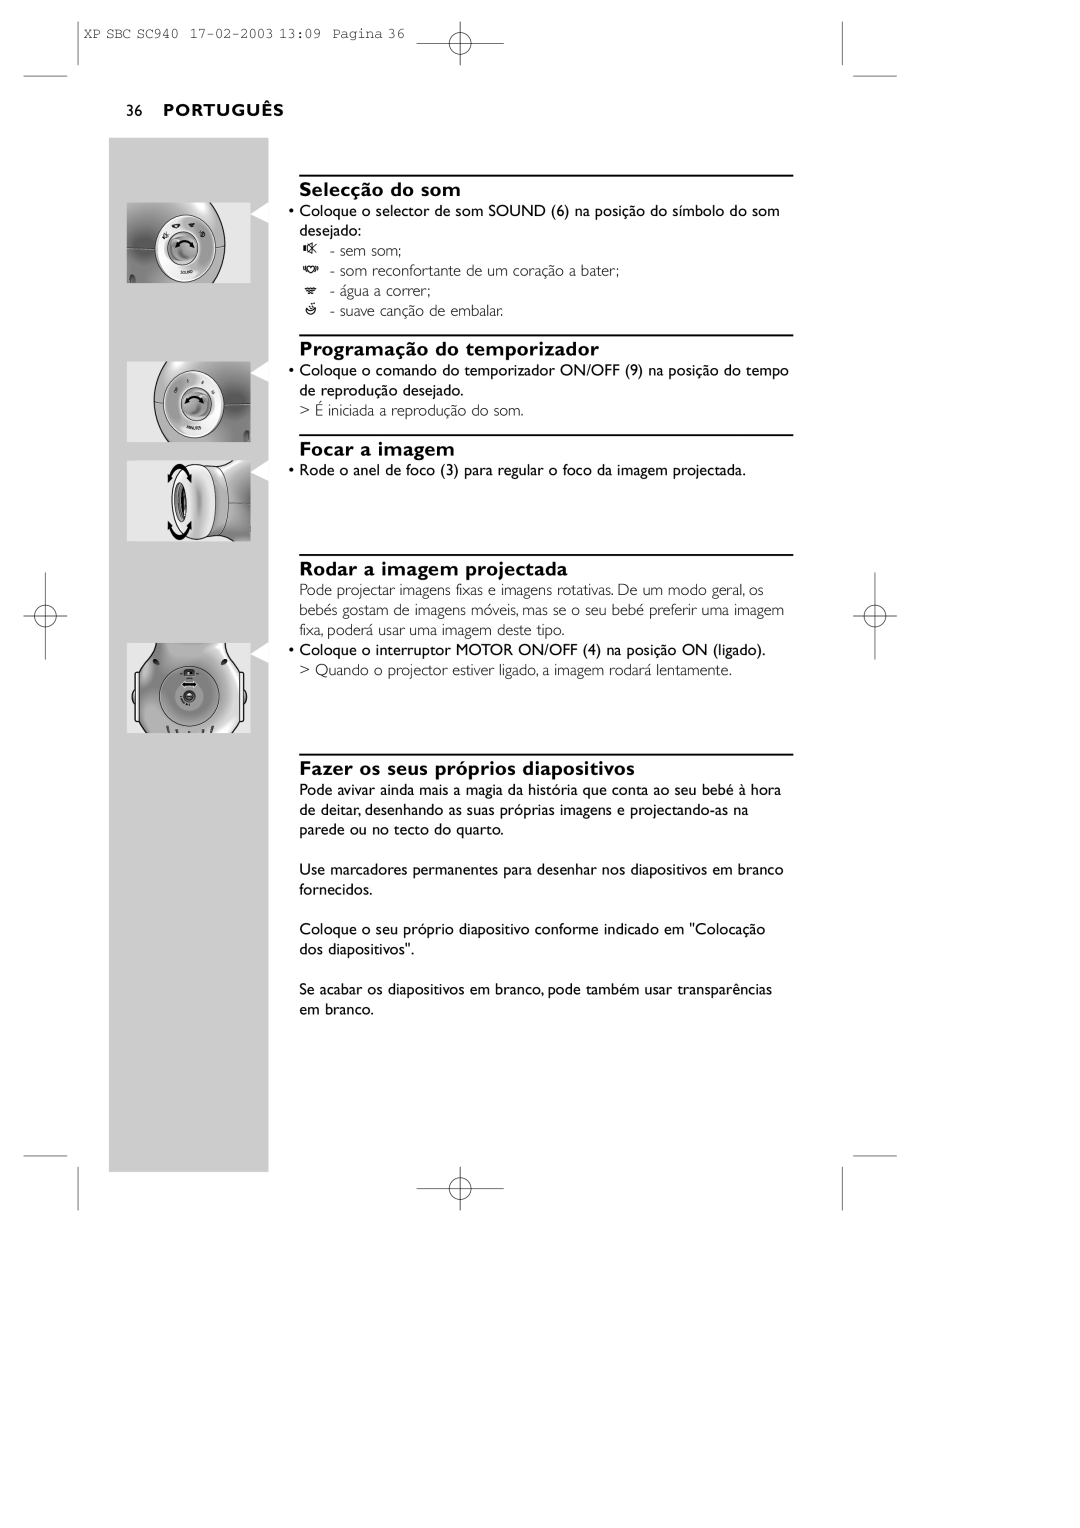 Philips SC940 manual Selecção do som, Programação do temporizador, Focar a imagem, Rodar a imagem projectada, Português 